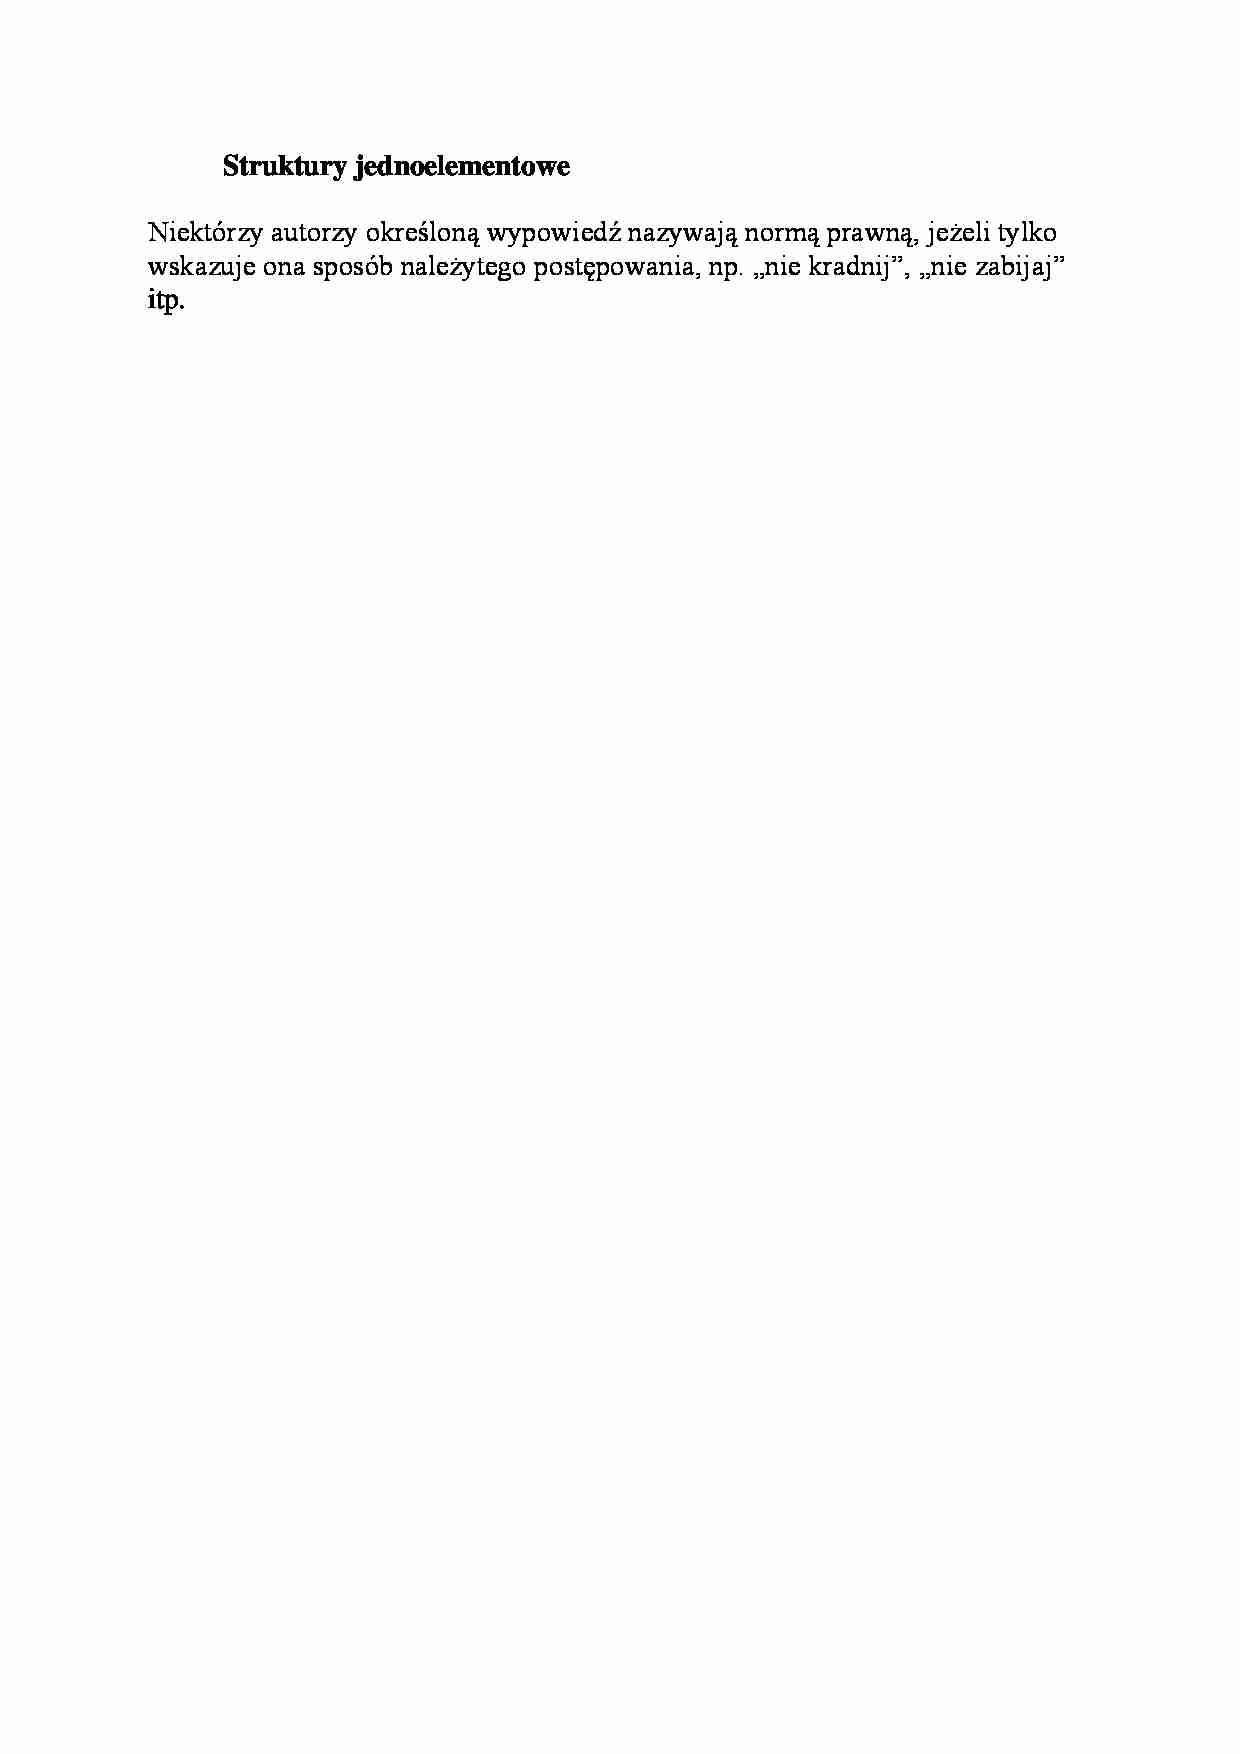 Struktury jednoelementowe - wykład - strona 1